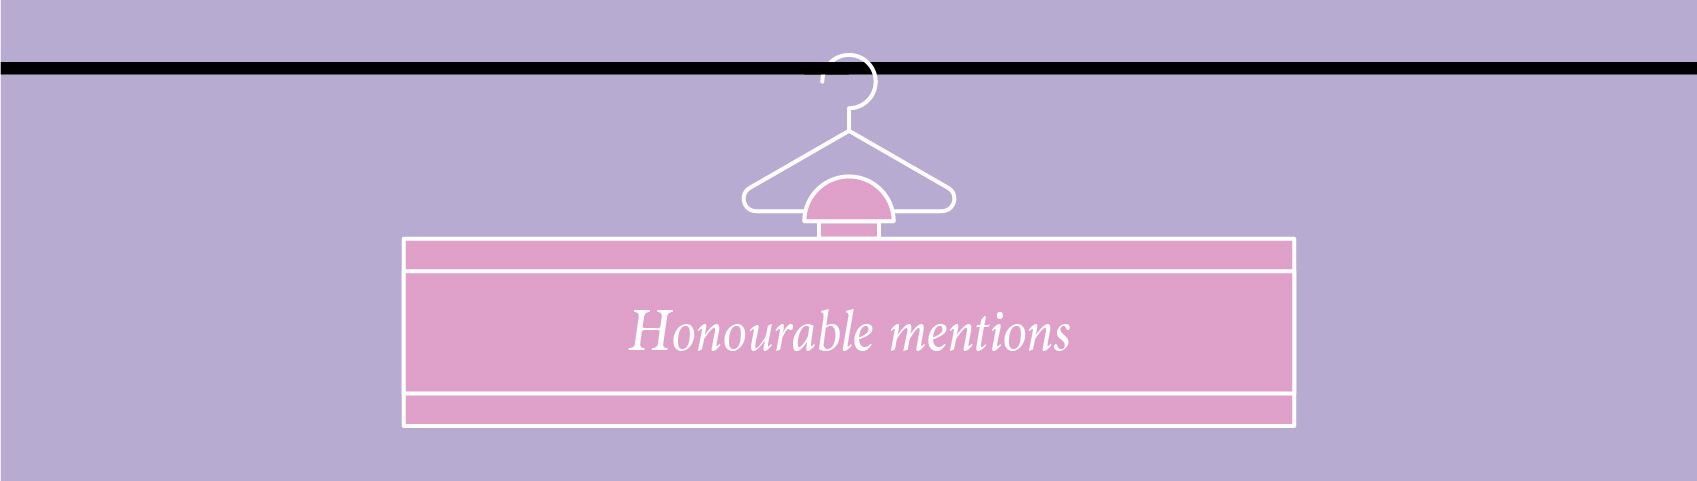 illustration of perfume bottle on a coat hanger honourable mentions